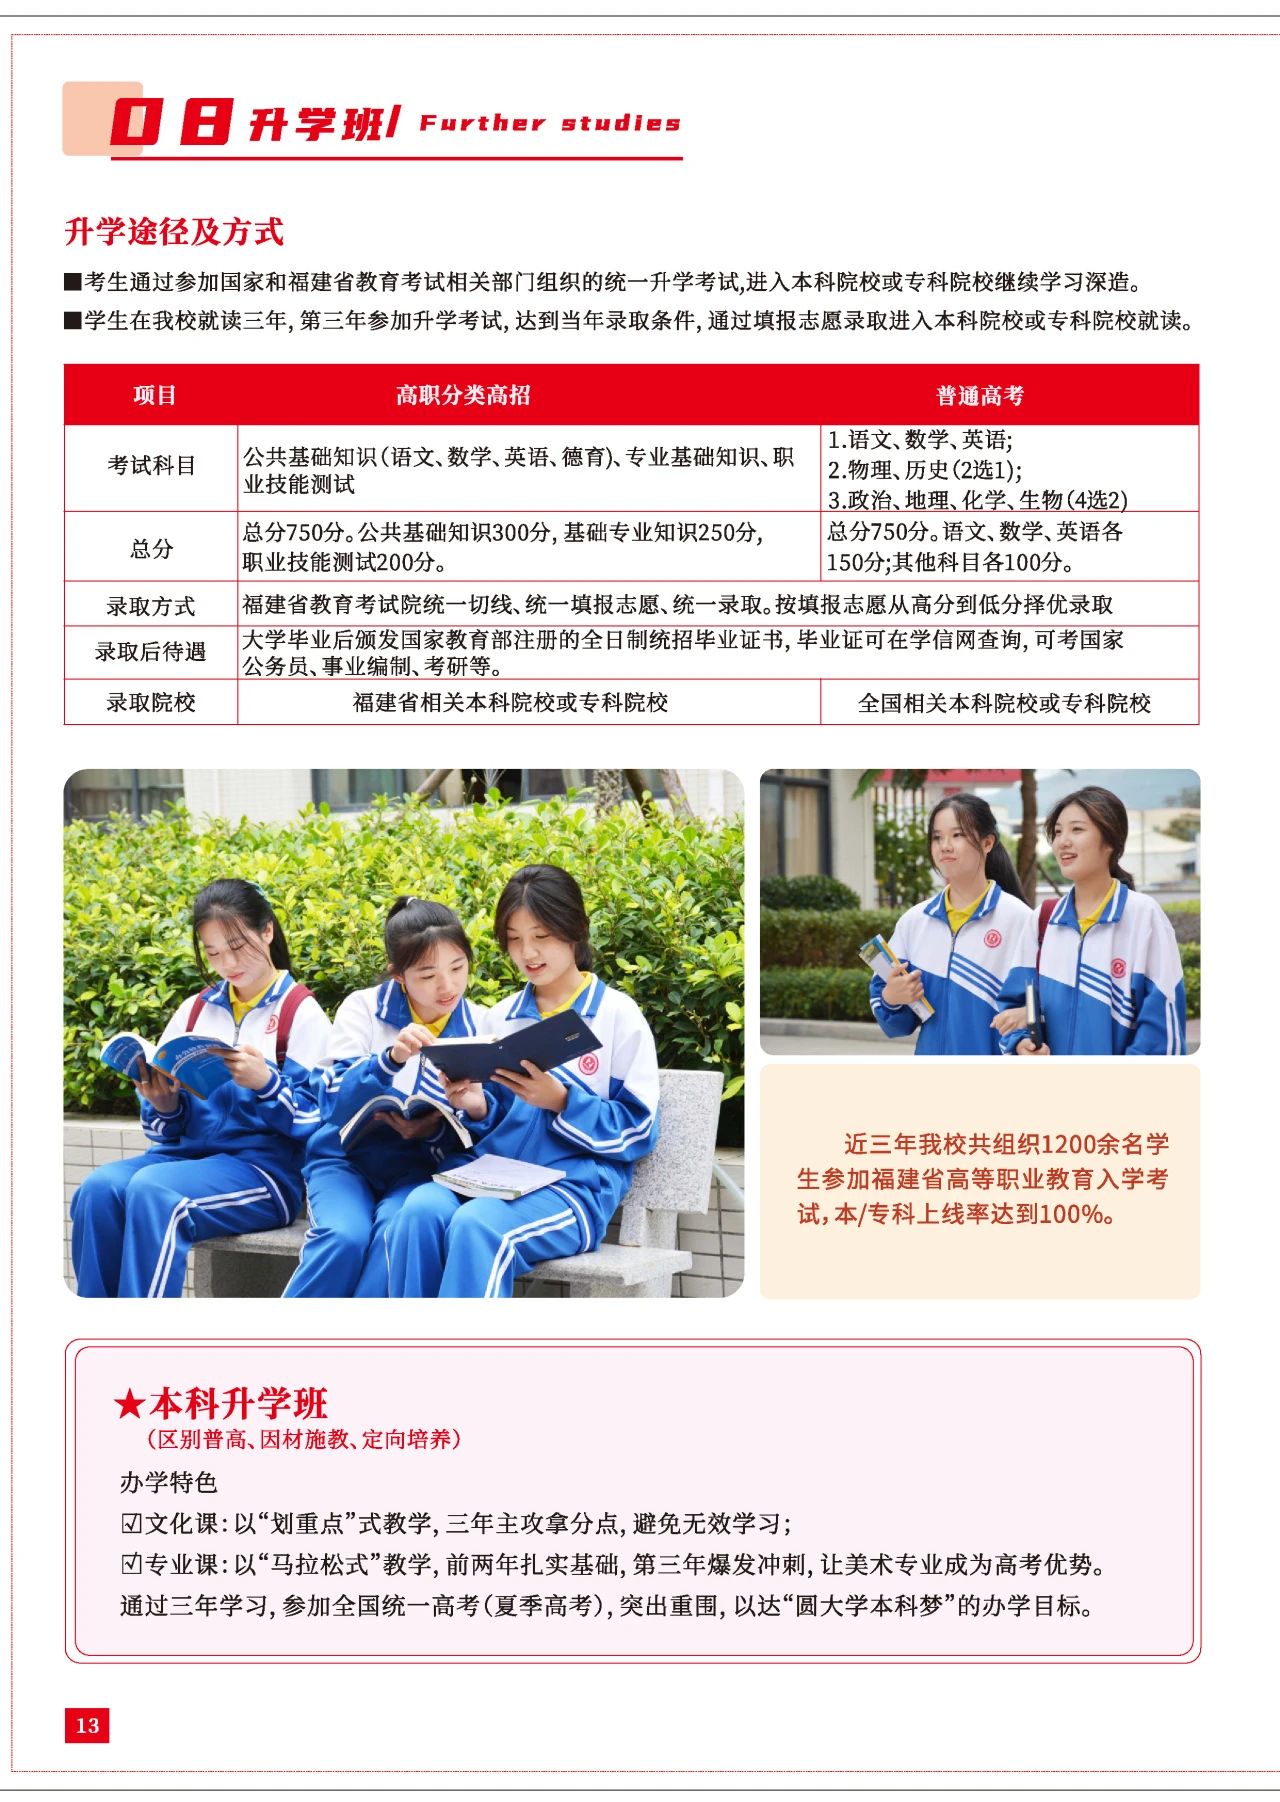 2023年福建华夏高级技工学校招生简章